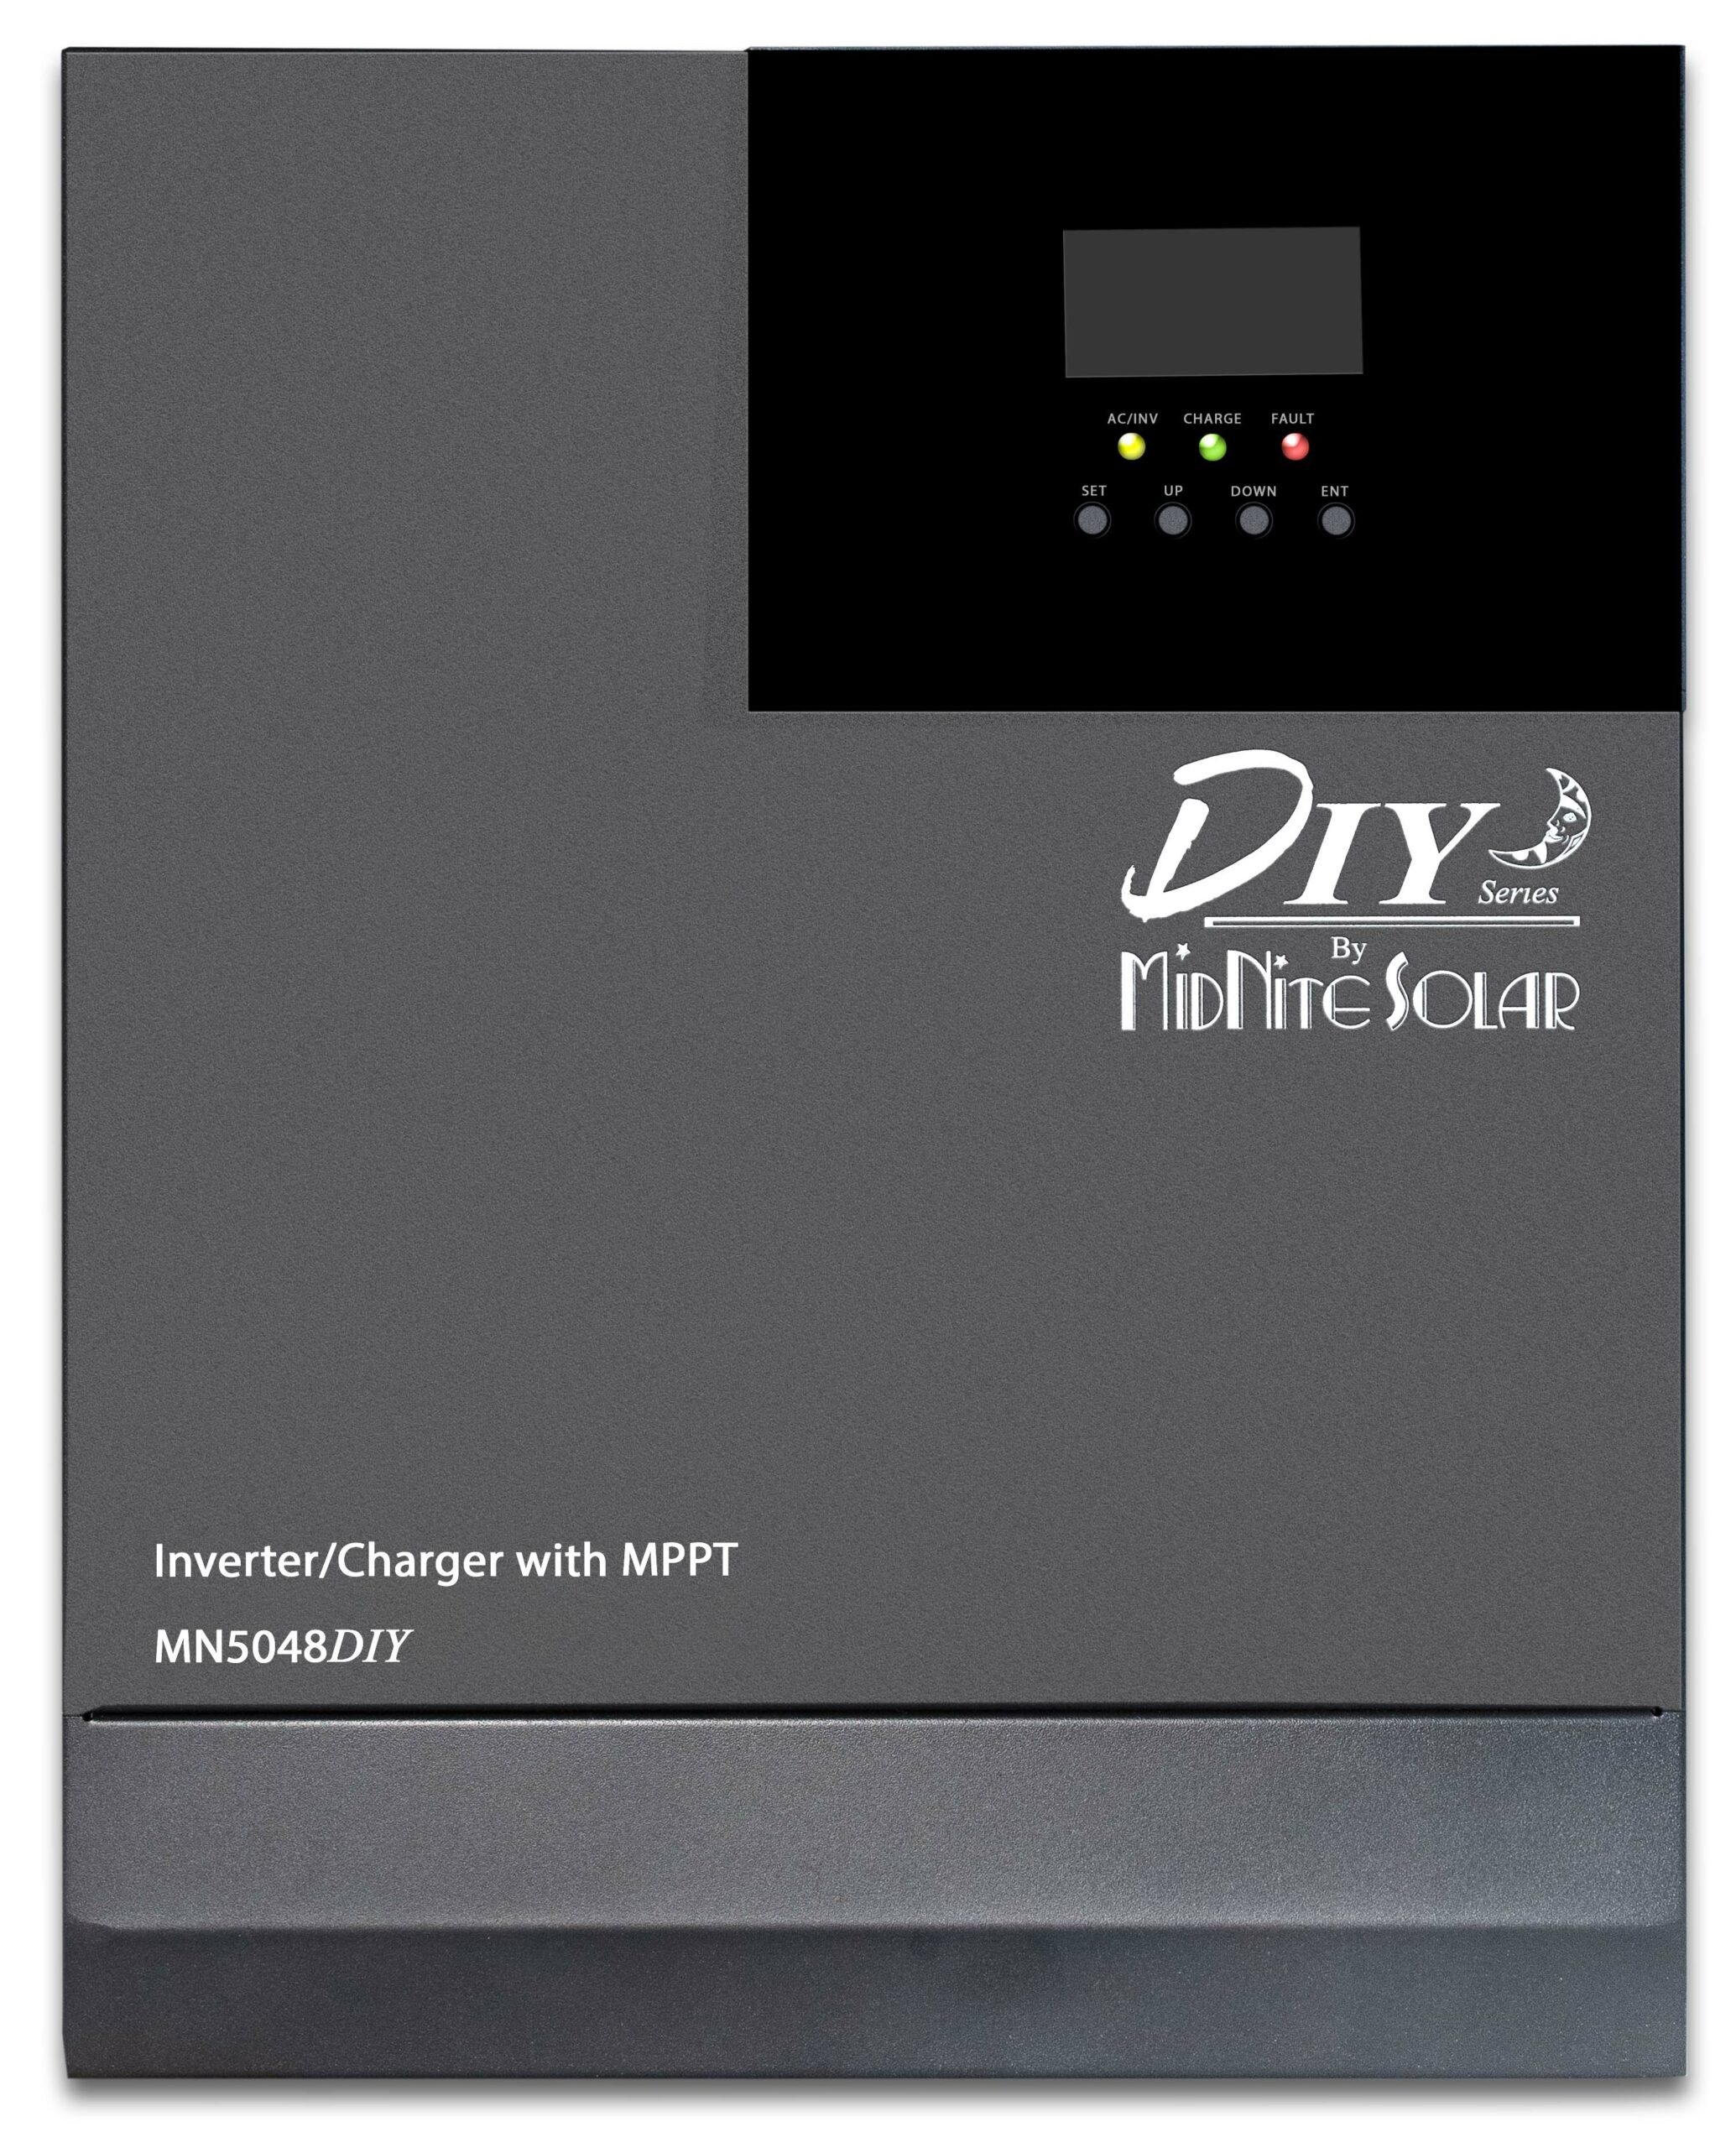 Midnite Solar DIY All-In-One Inverter/Charger, 5000 Watt, 48V, 120VAC 1